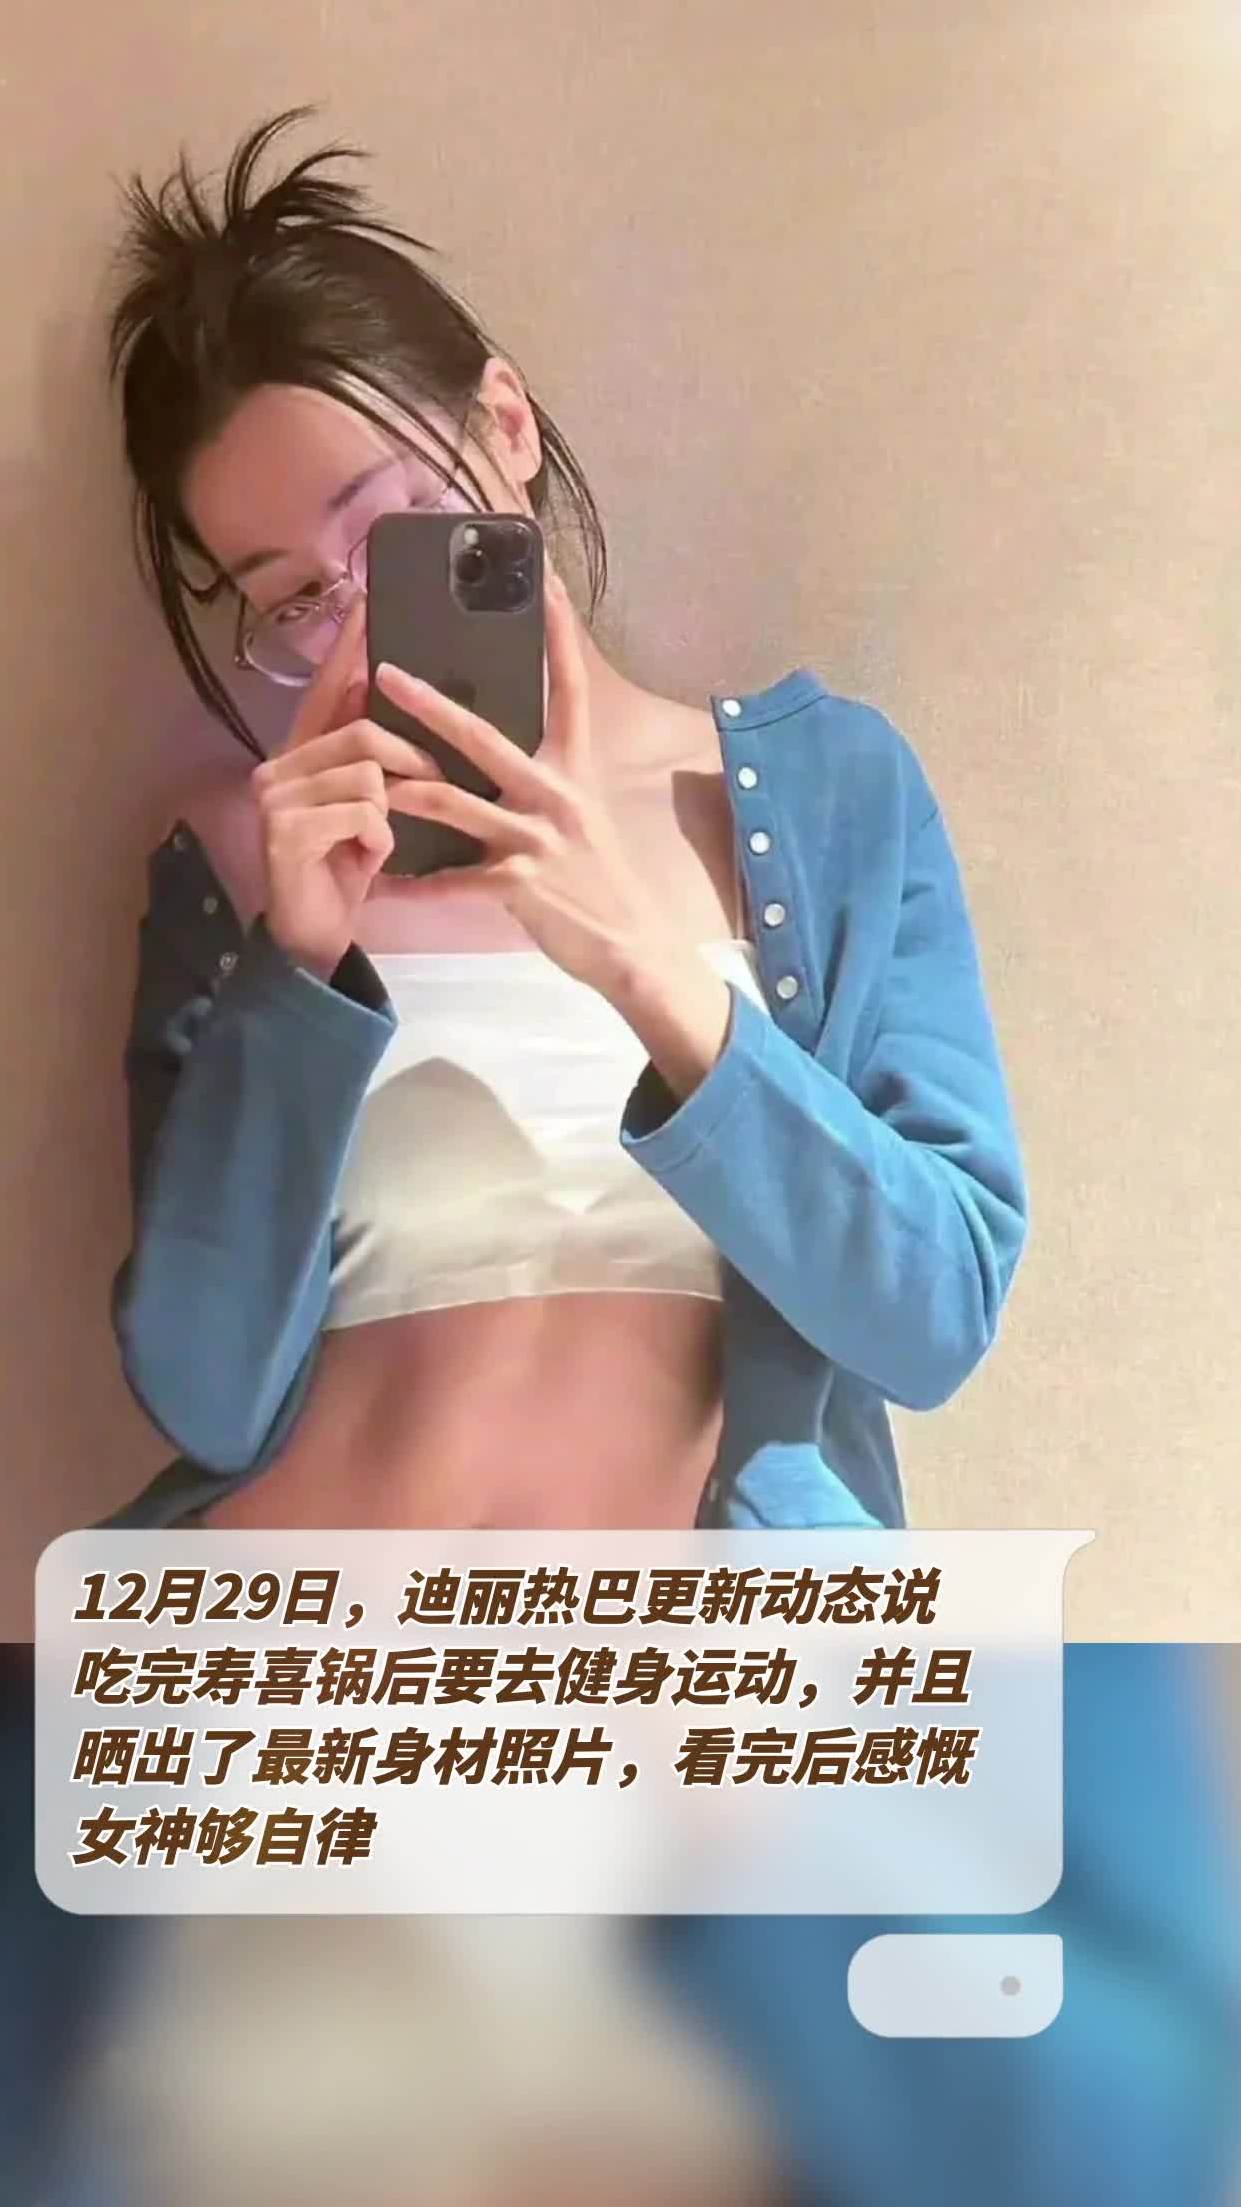 12月29日,迪丽热巴更新动态说,吃完寿喜锅后要去健身运动,并且晒出了